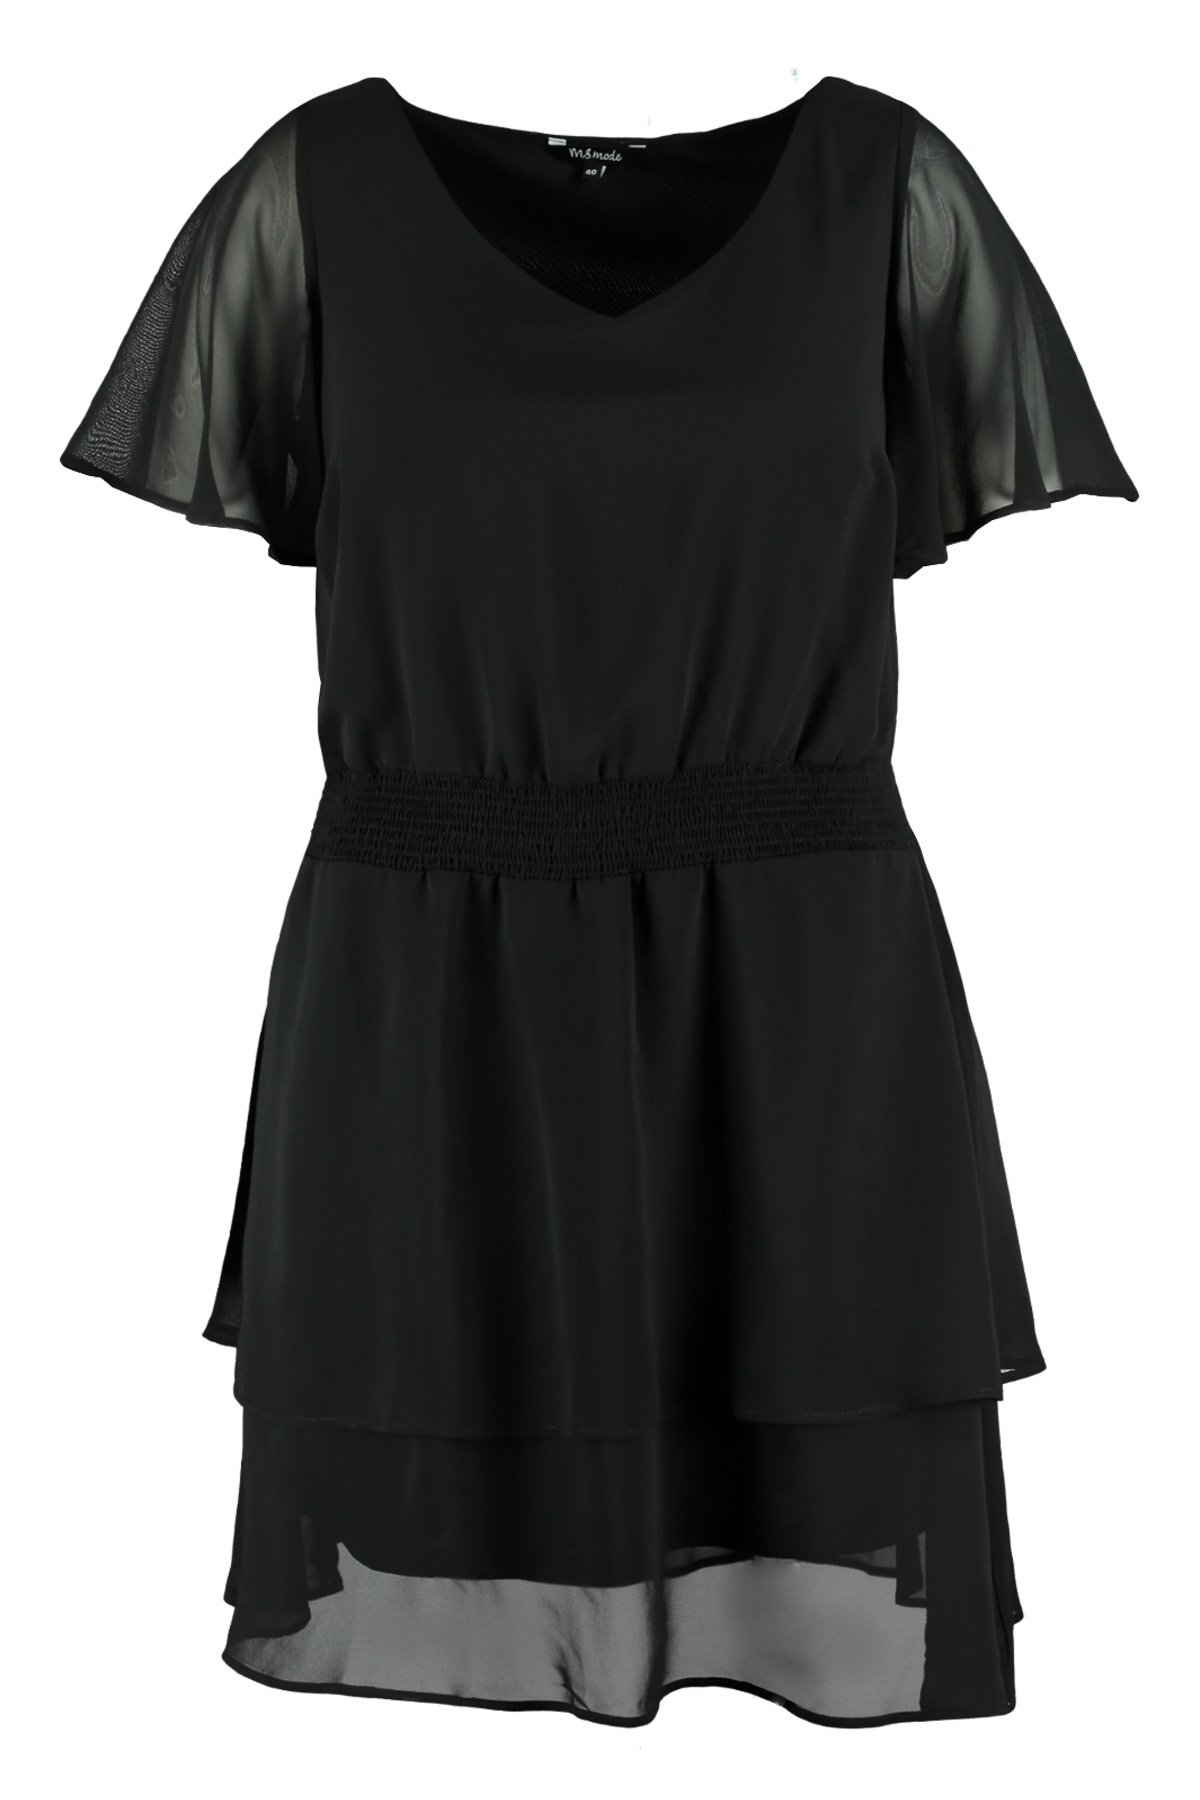 Damen Kleid mit Smokeinsatz | MS Mode